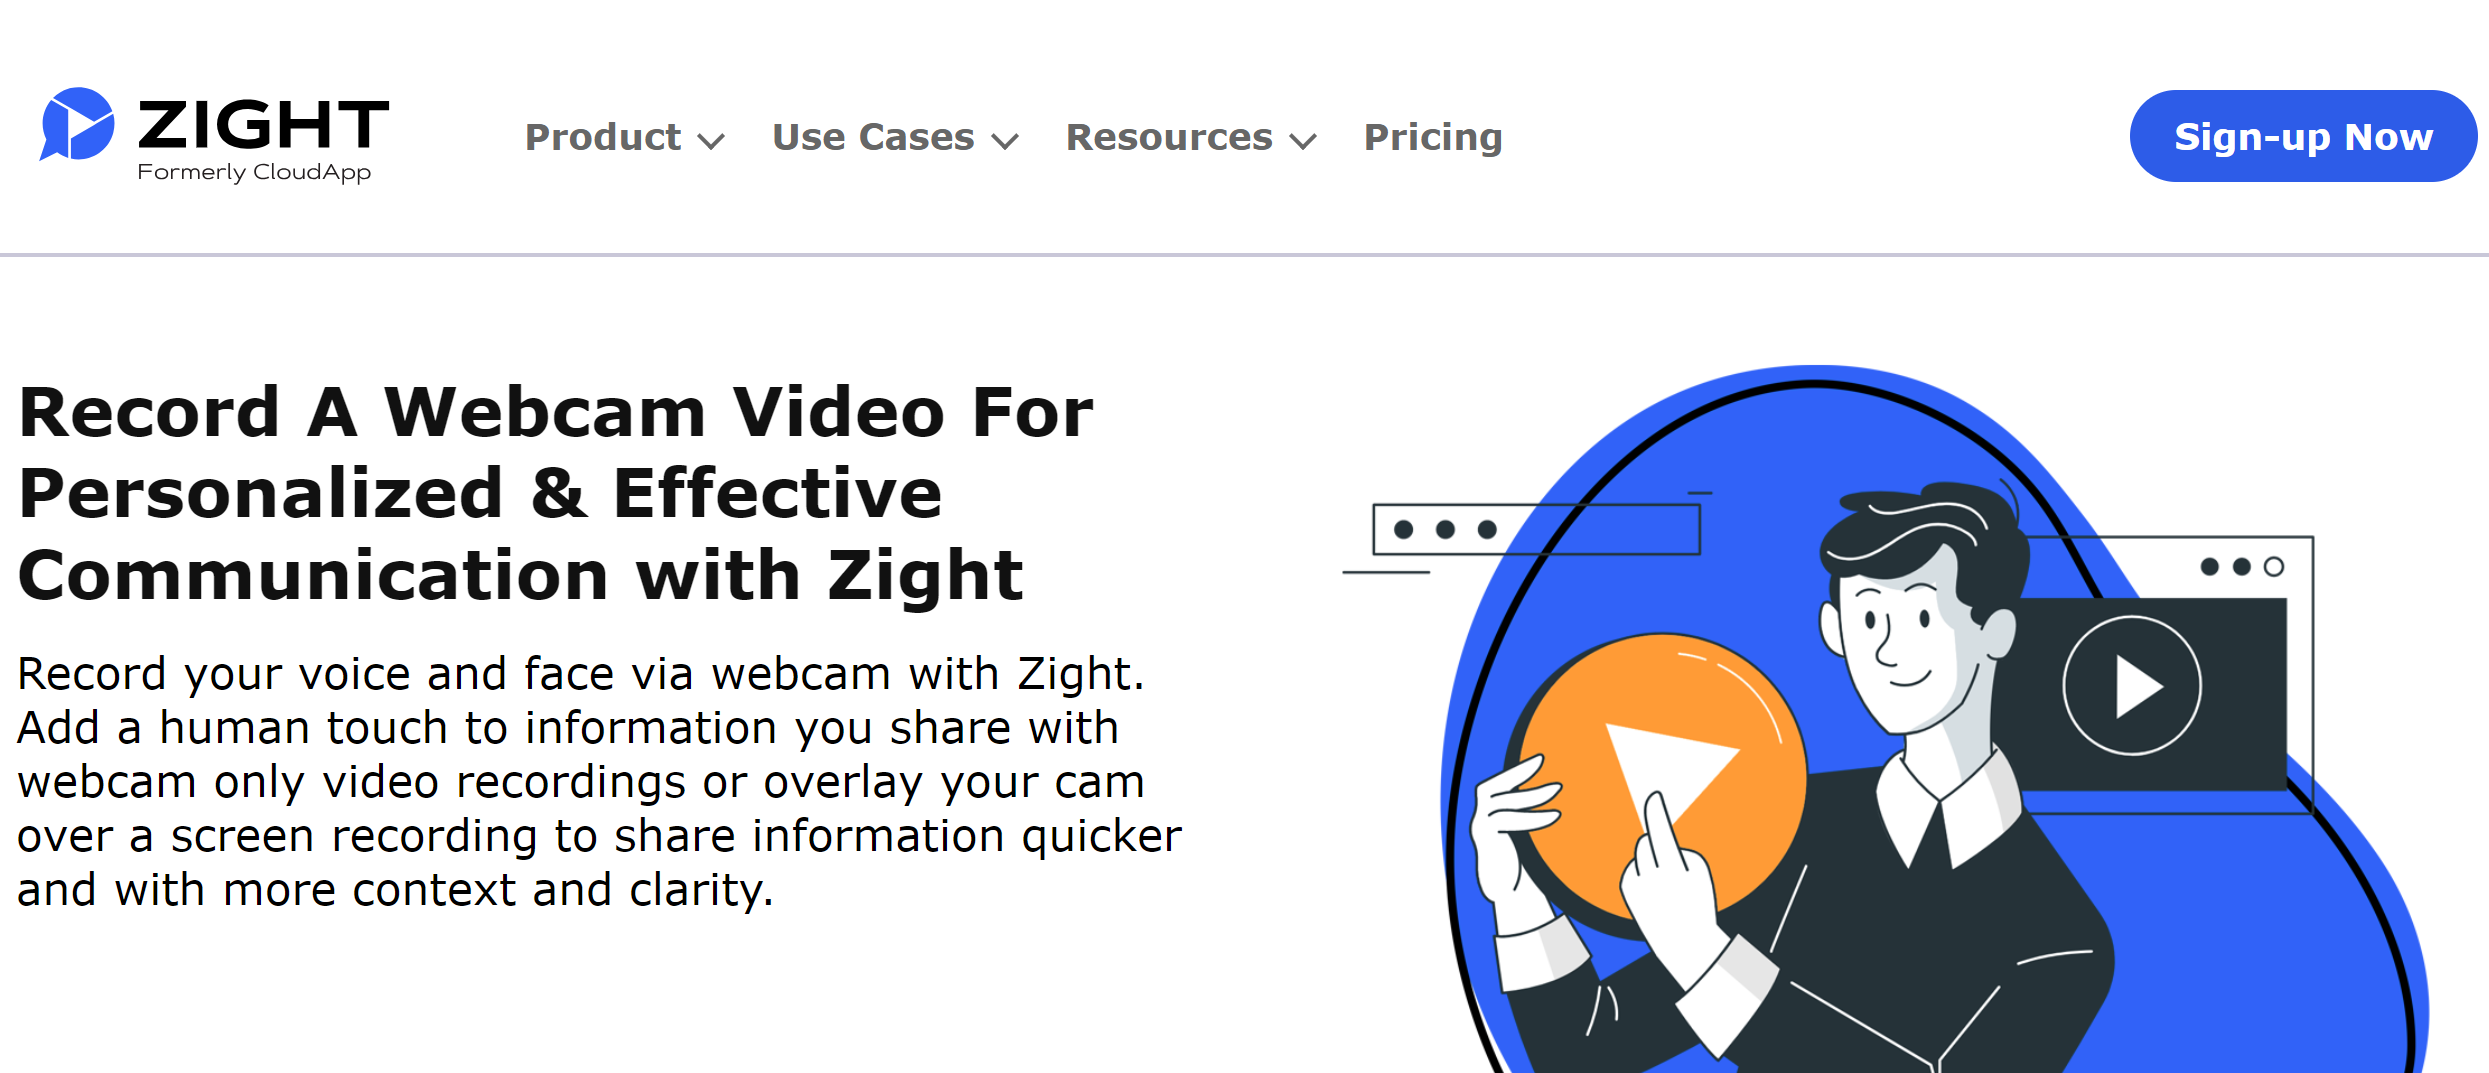 Zight Video Sharing Platform